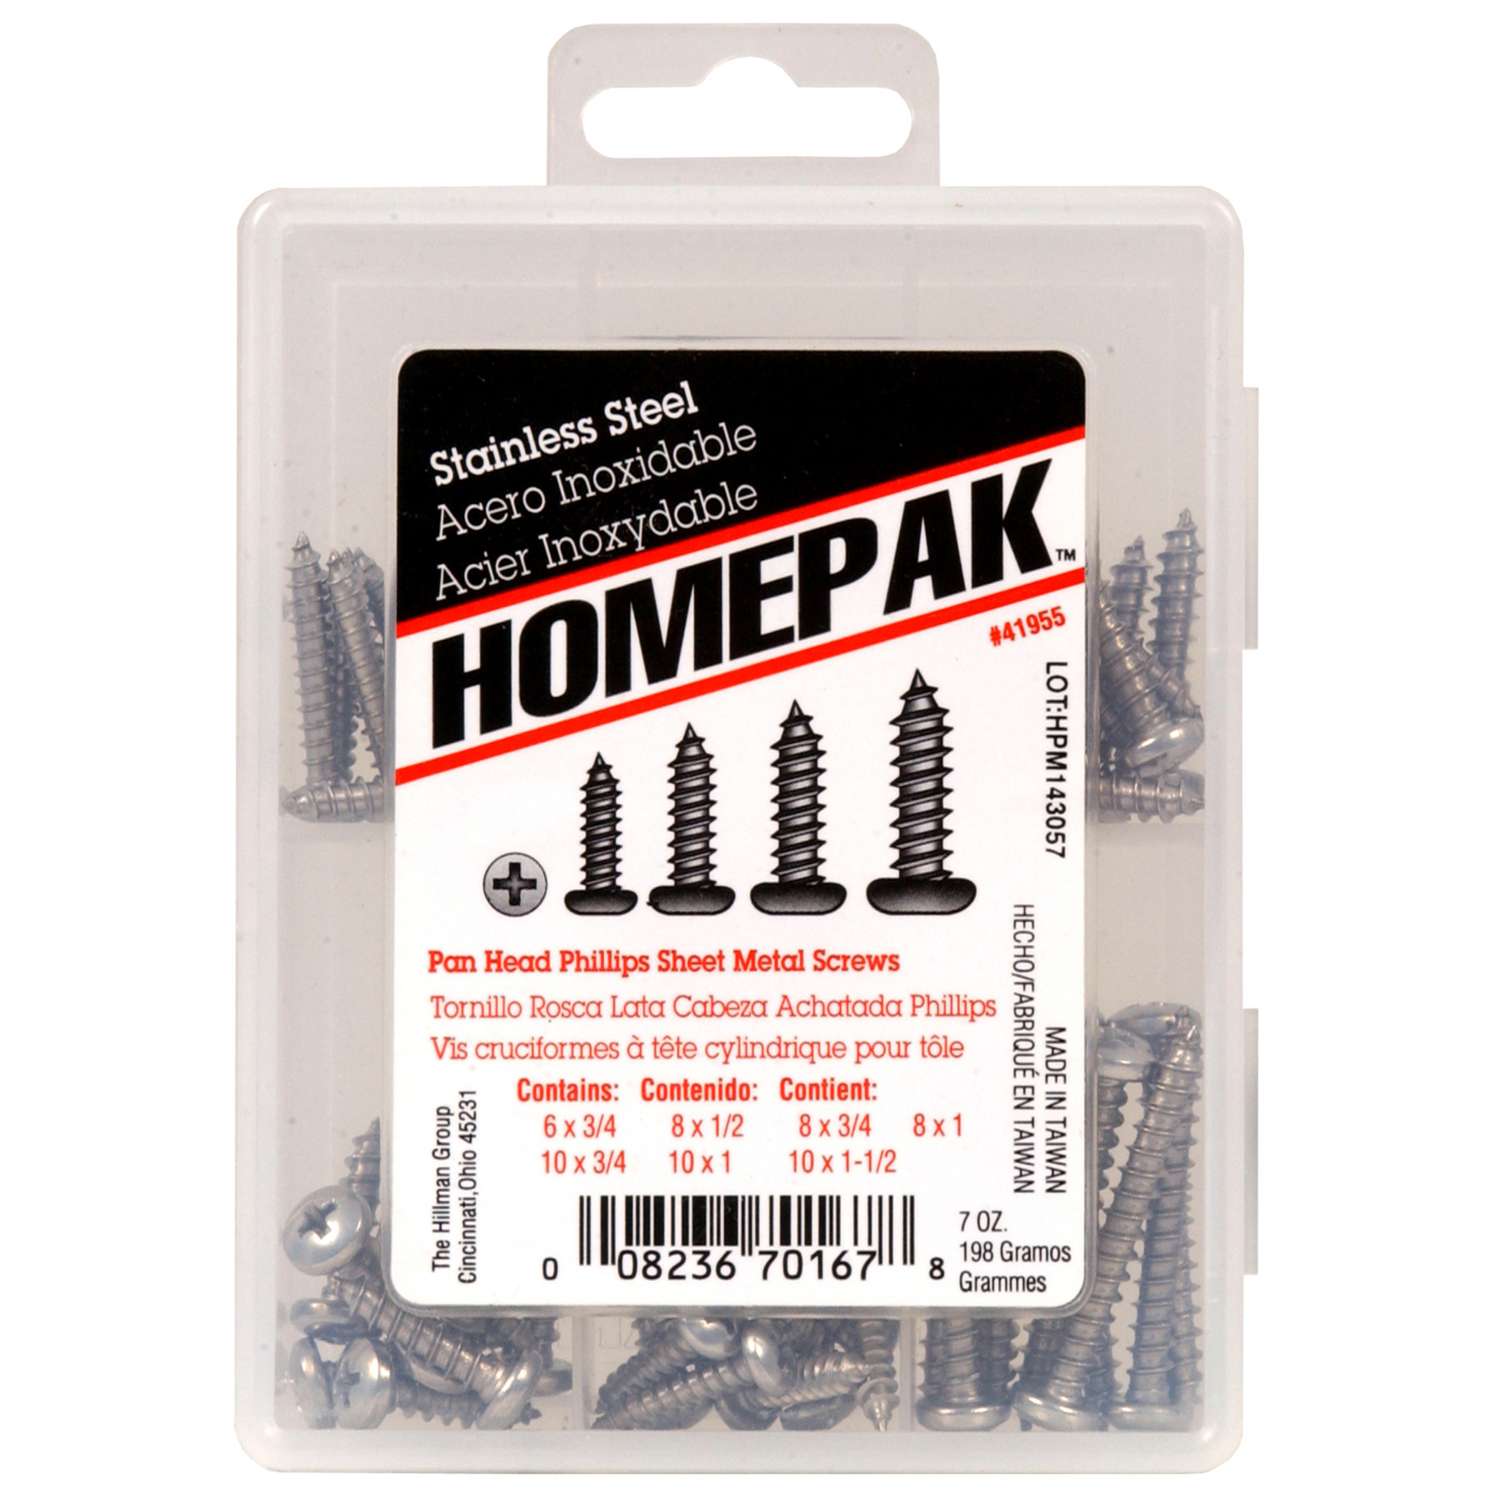 Homepak Assorted in. Phillips Pan Head Sheet Metal Screw Kit